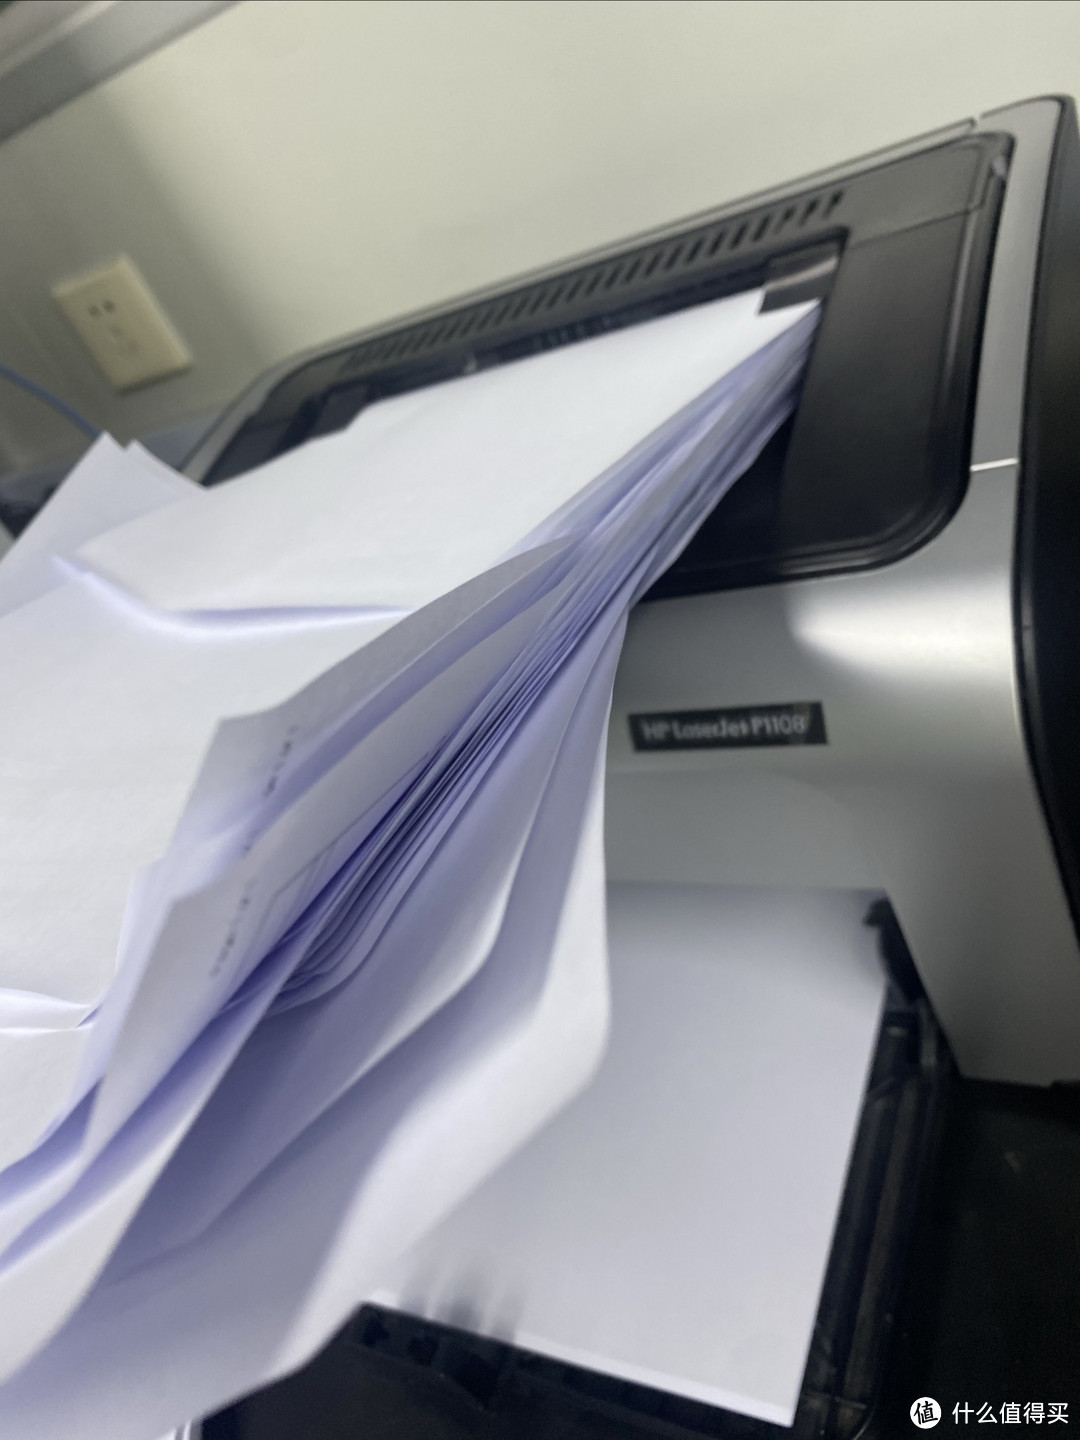 HP P1108打印机